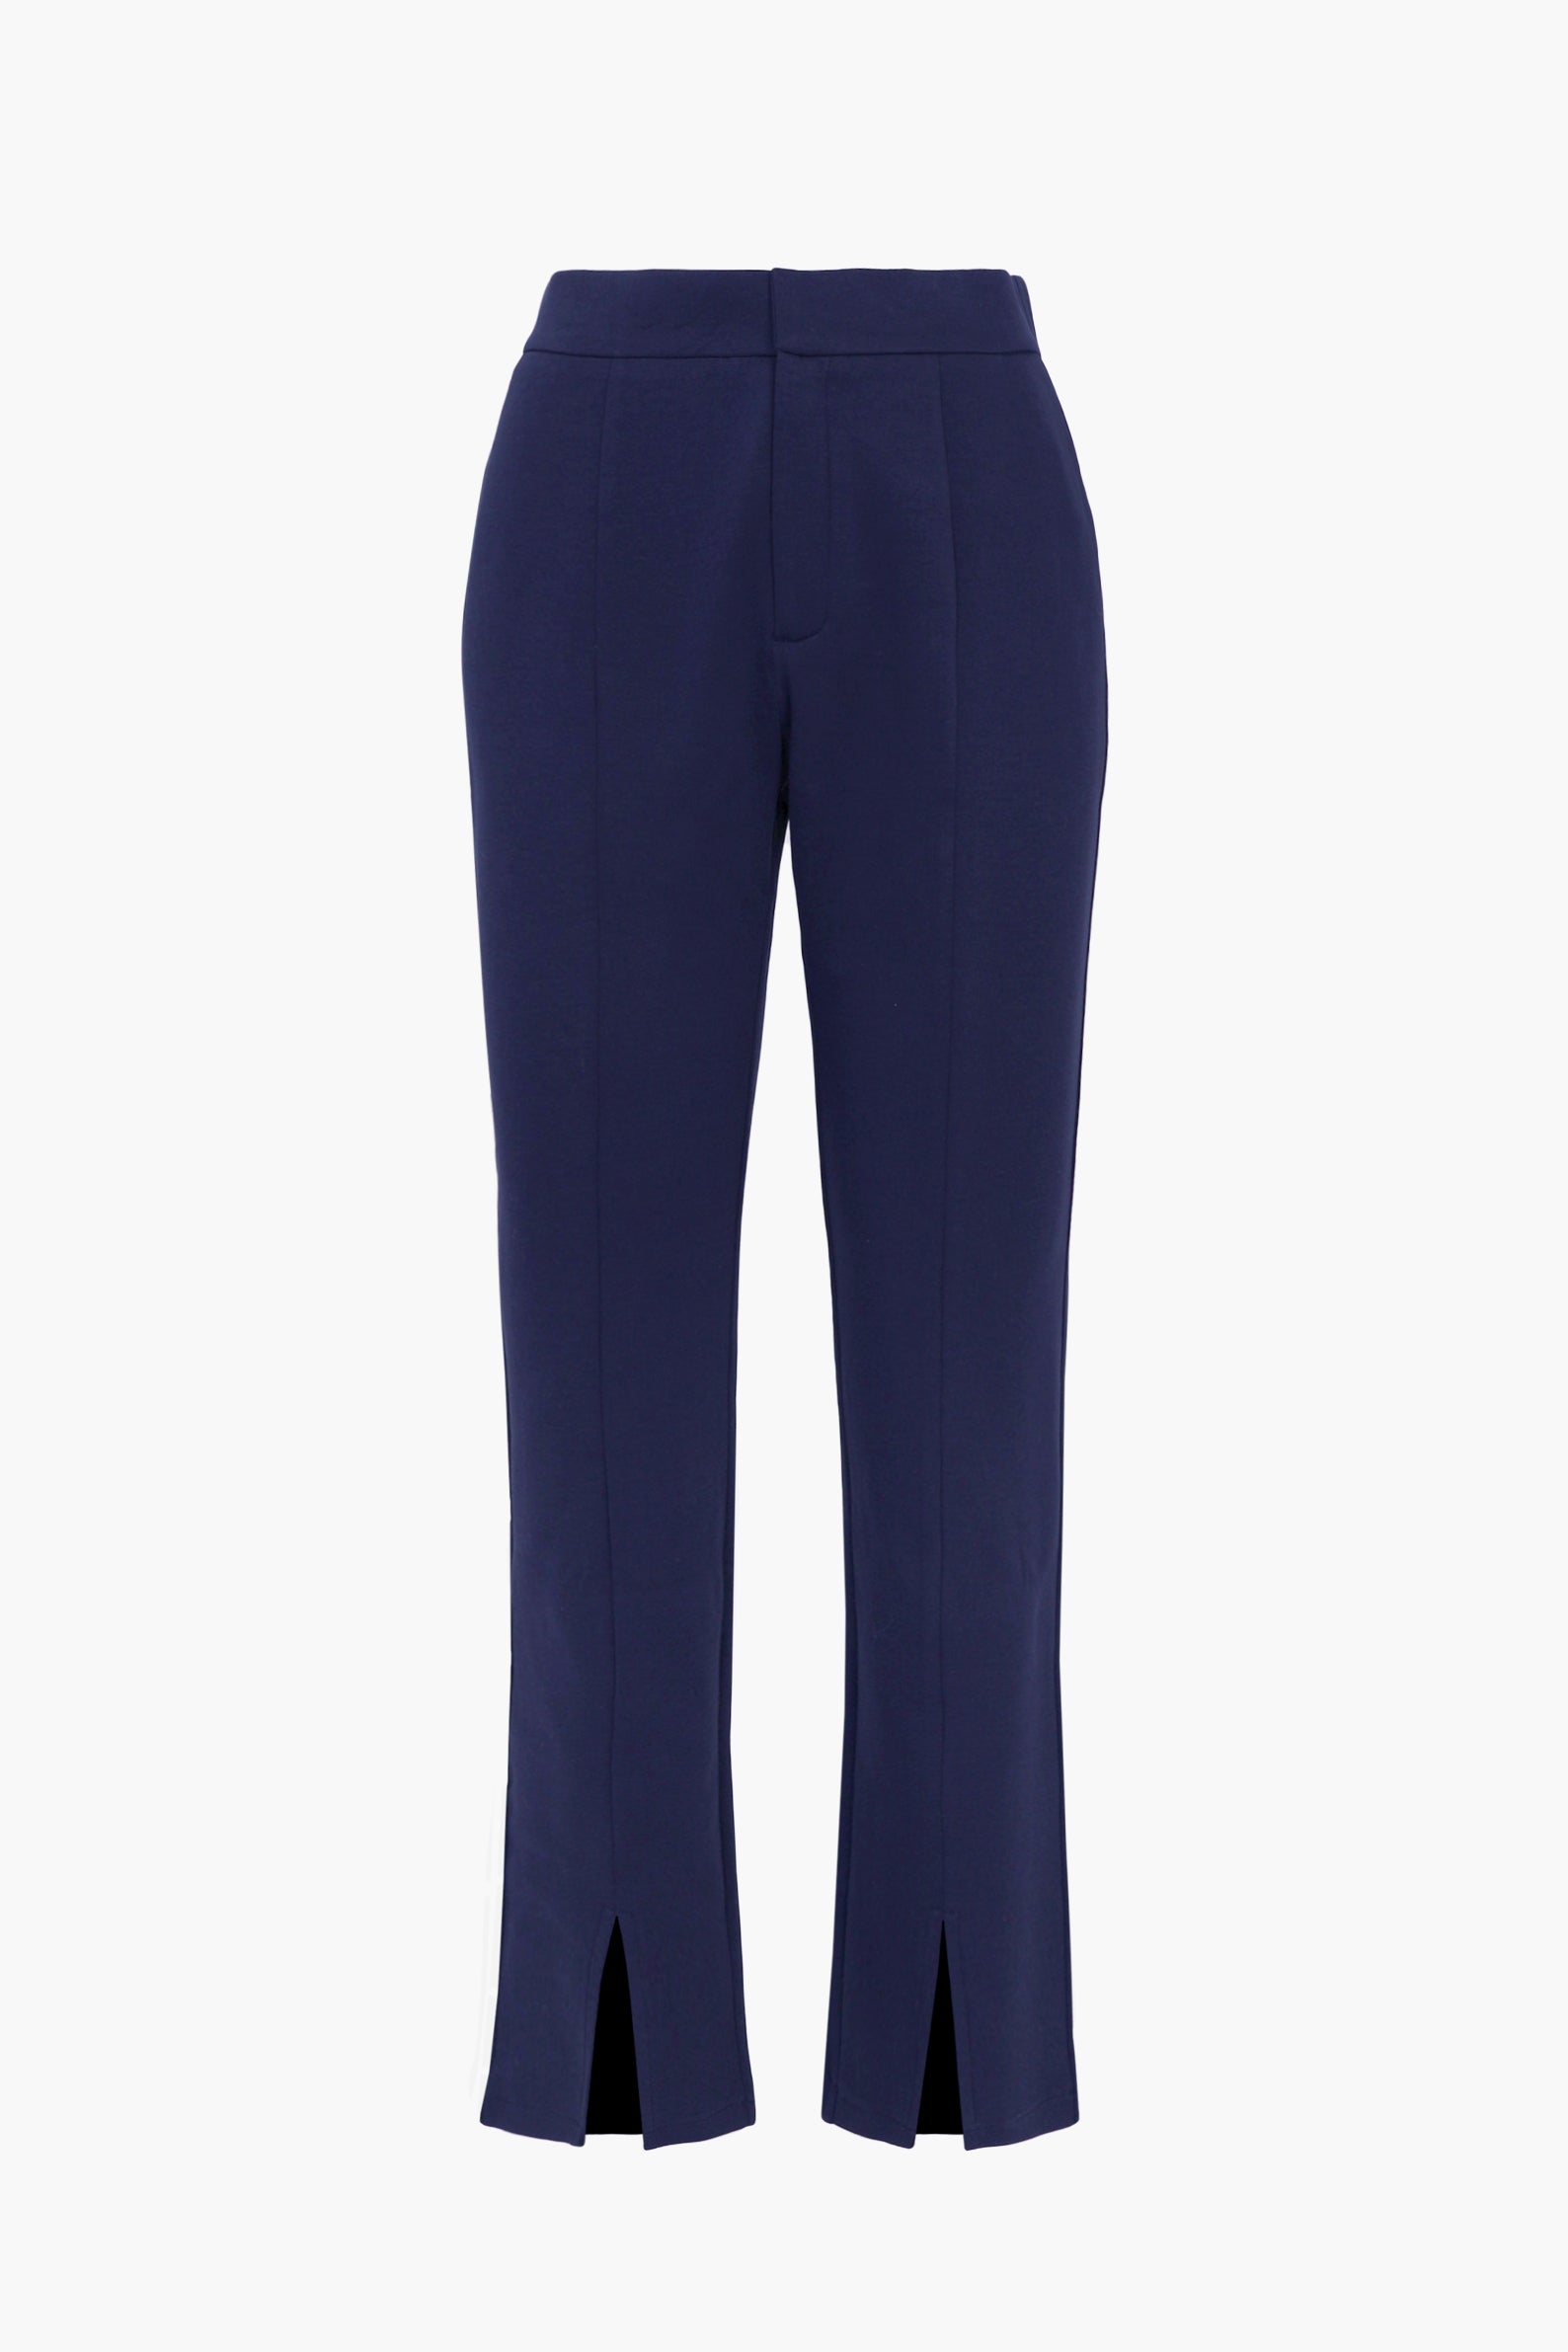  XIALON Women's Dress High Waist Split Hem Pants (Color : Navy  Blue, Size : Large) : Clothing, Shoes & Jewelry